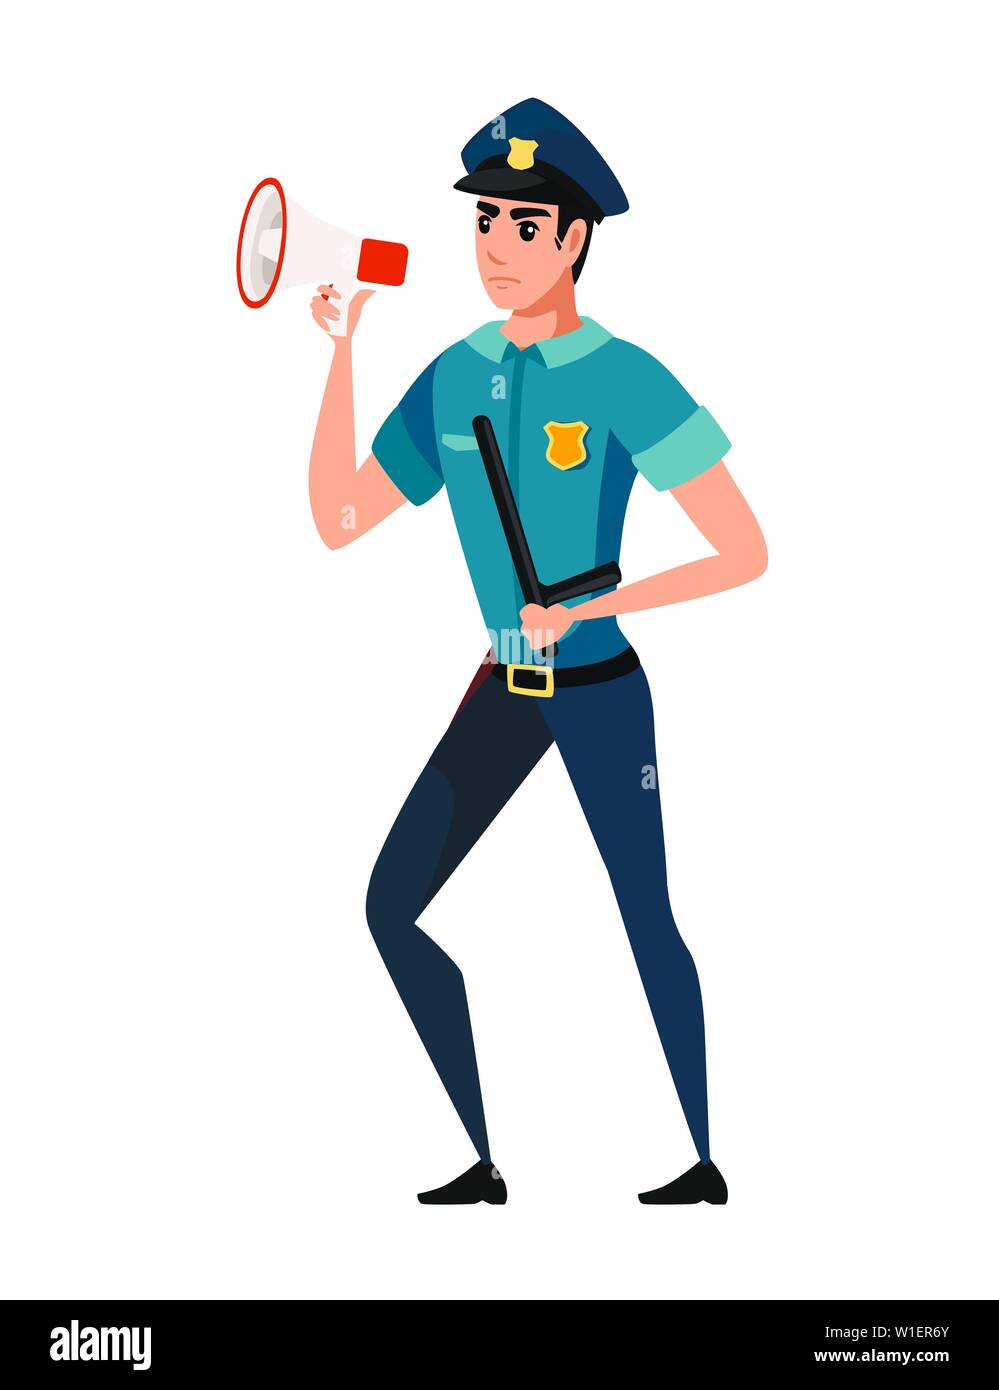 Polizisten durch ein Megaphon tragen dunkelblaue Hose Hellblau shirt Cartoon Character Design flachbild Vektor-illustration kreischen. Stock Vektor